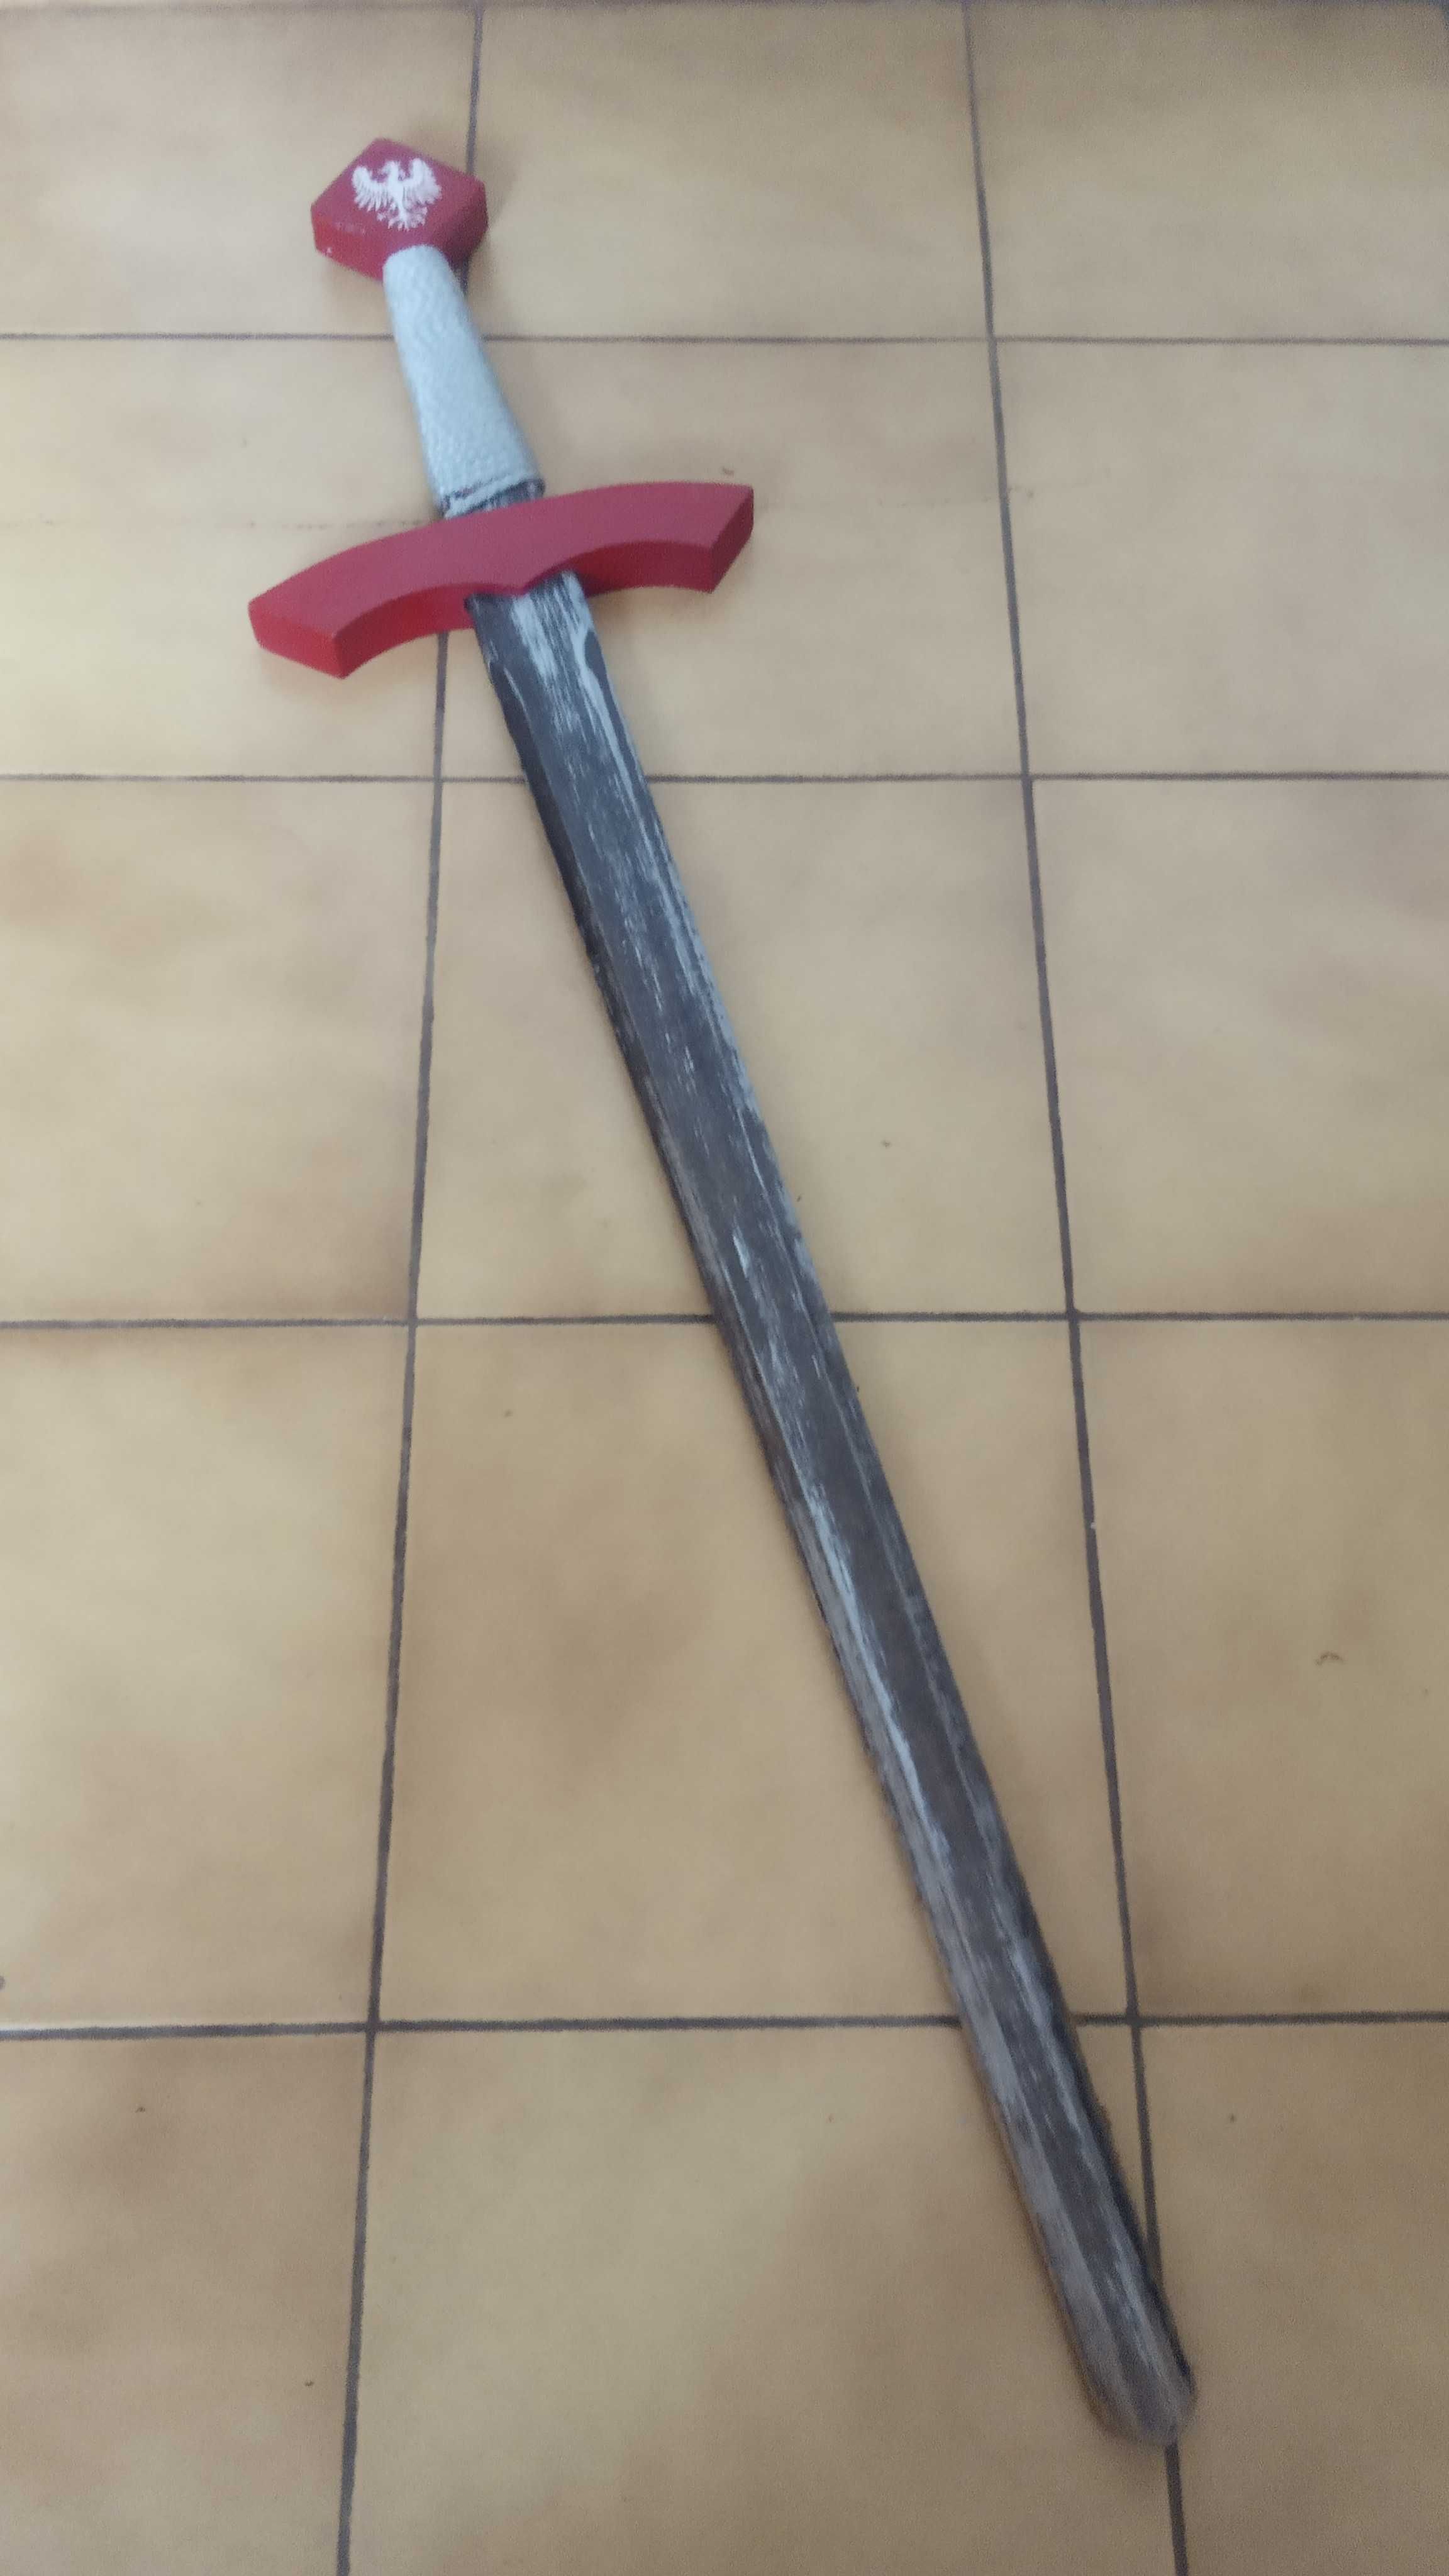 Miecz drewniany z czerwonym pokrowcem na pasku, z orłem